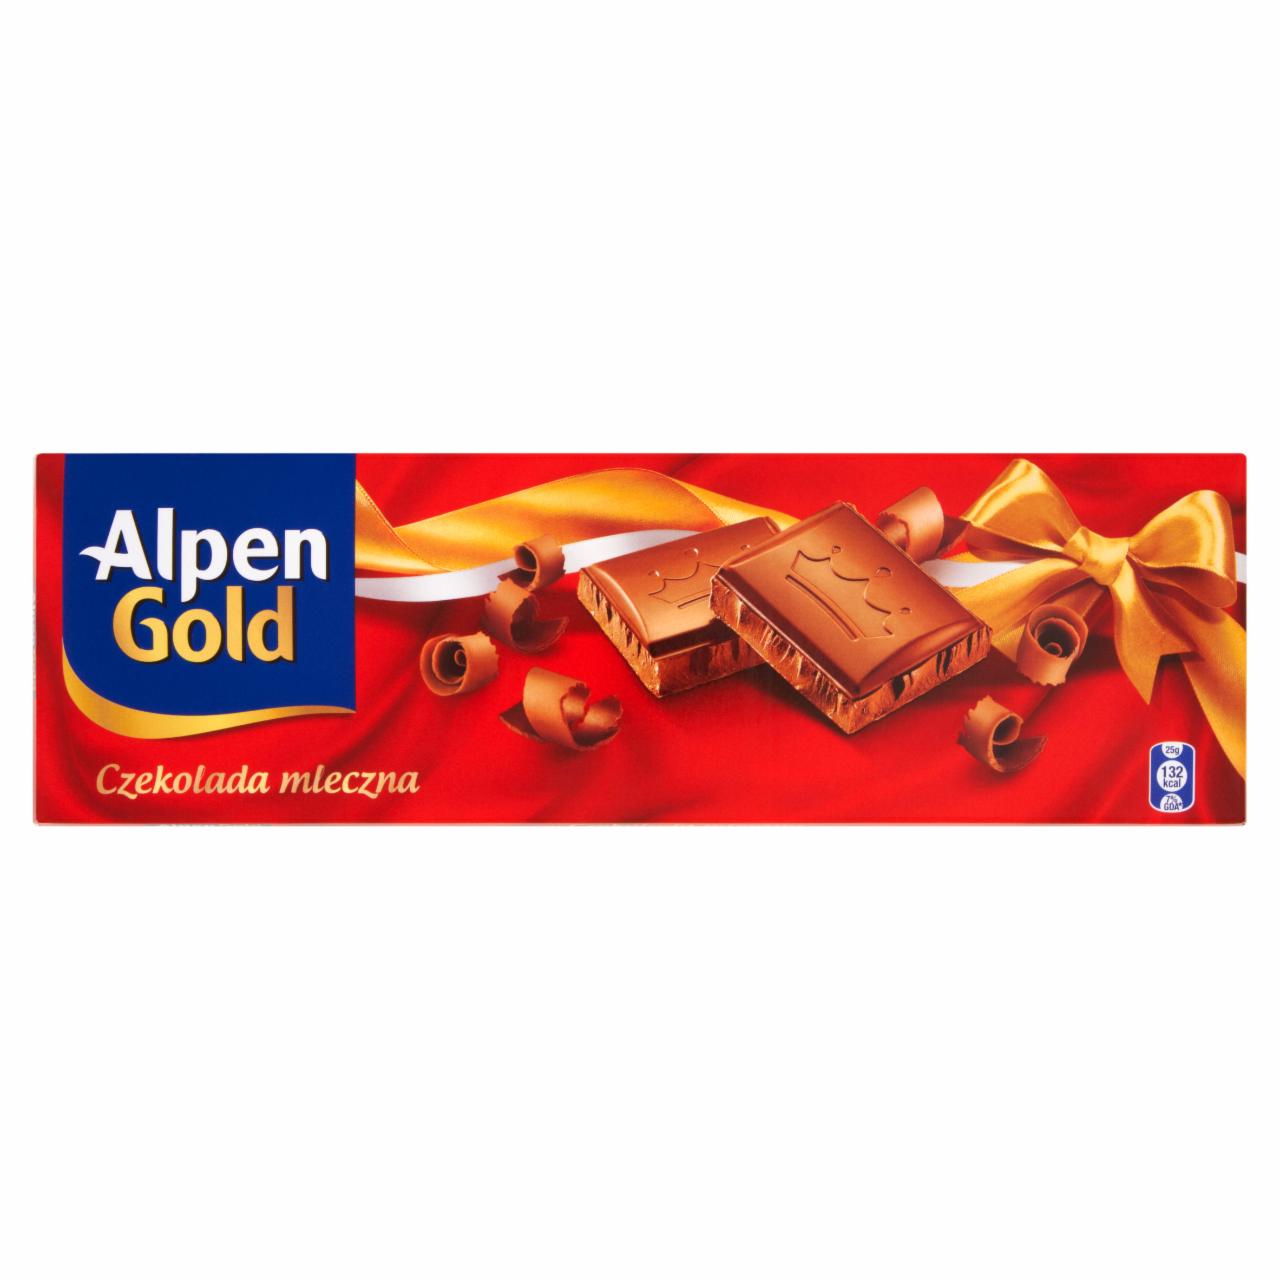 Zdjęcia - Alpen Gold Czekolada mleczna 200 g